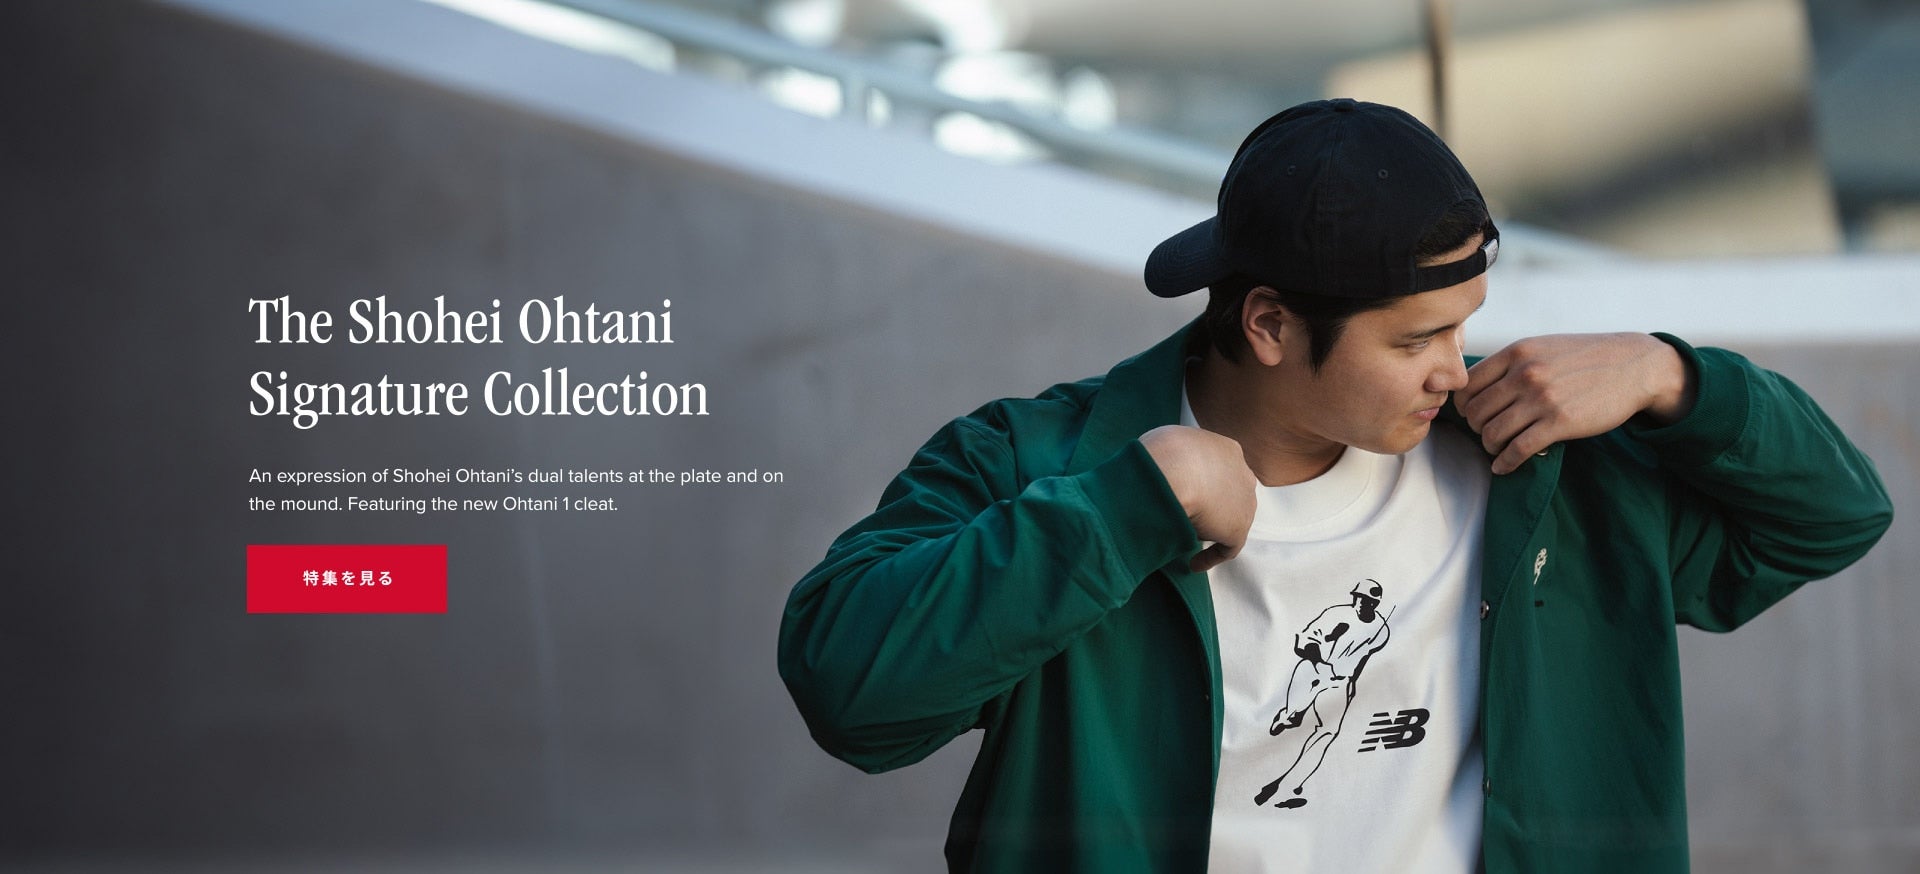 The Shohei Ohtani Signature Collection